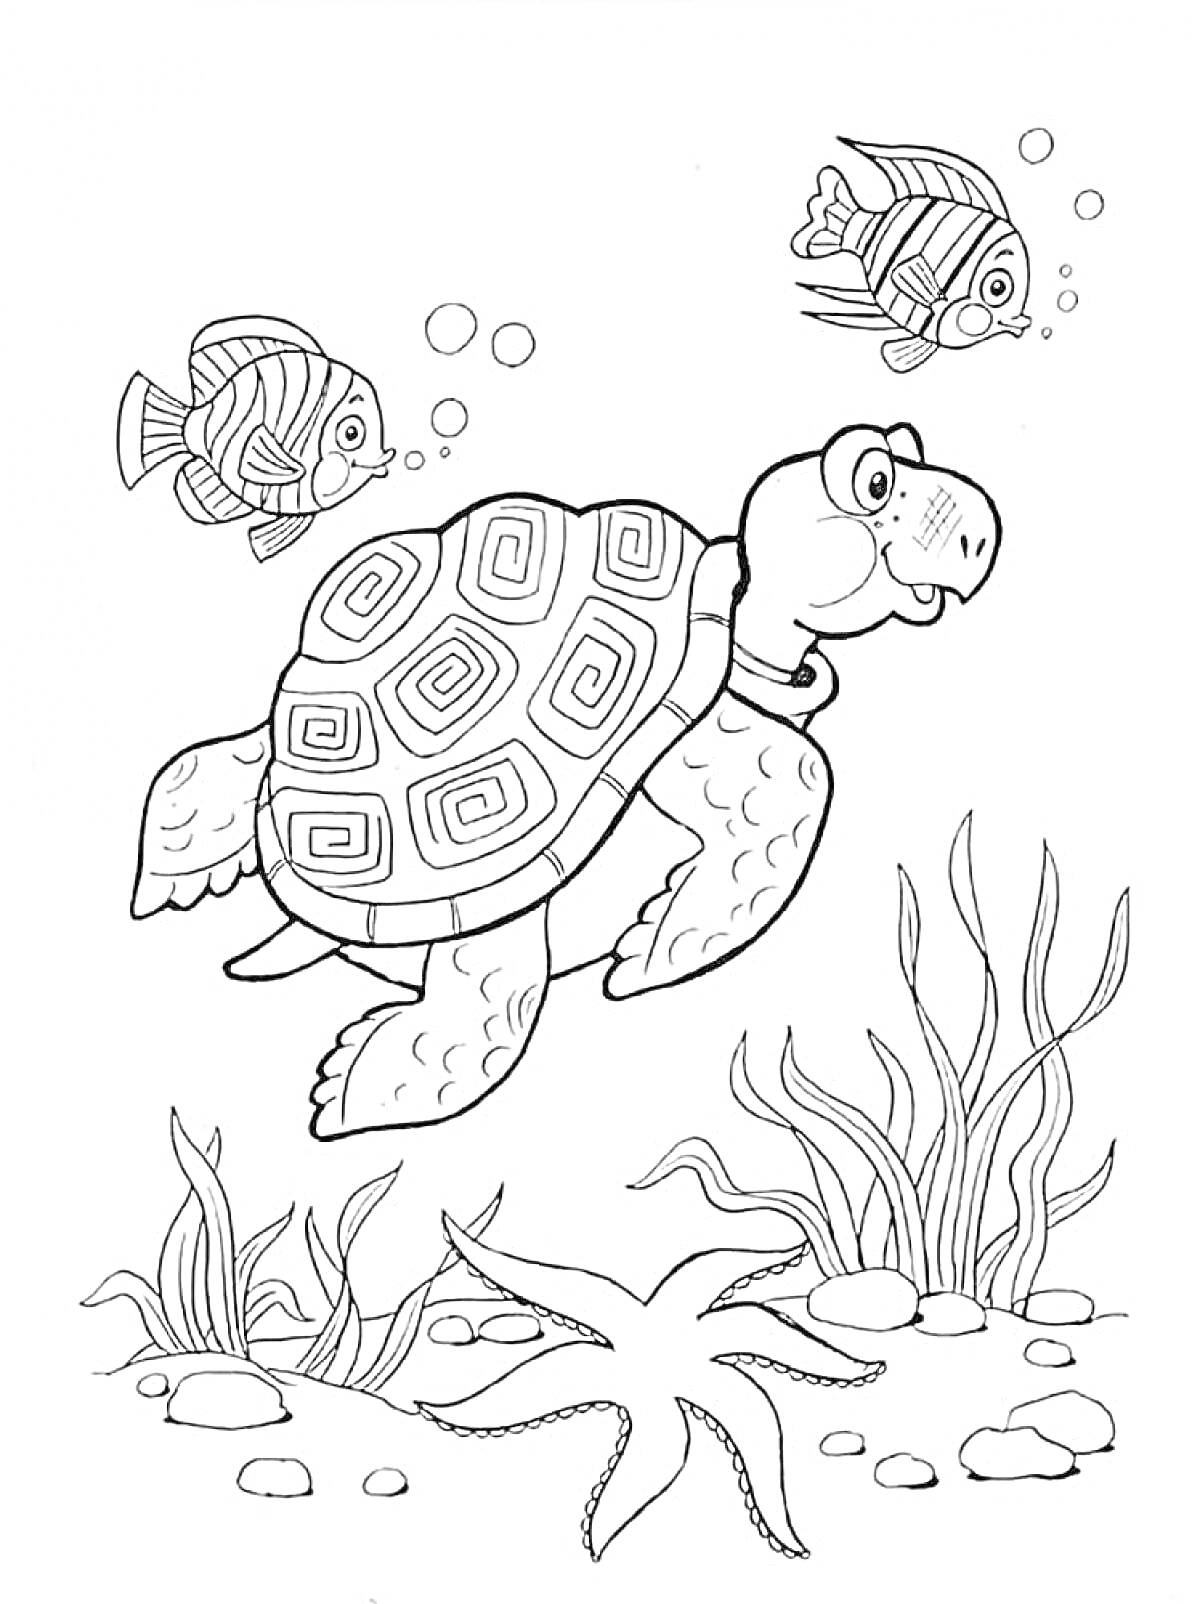 Раскраска черепаха, рыбки, морская звезда и водоросли под водой